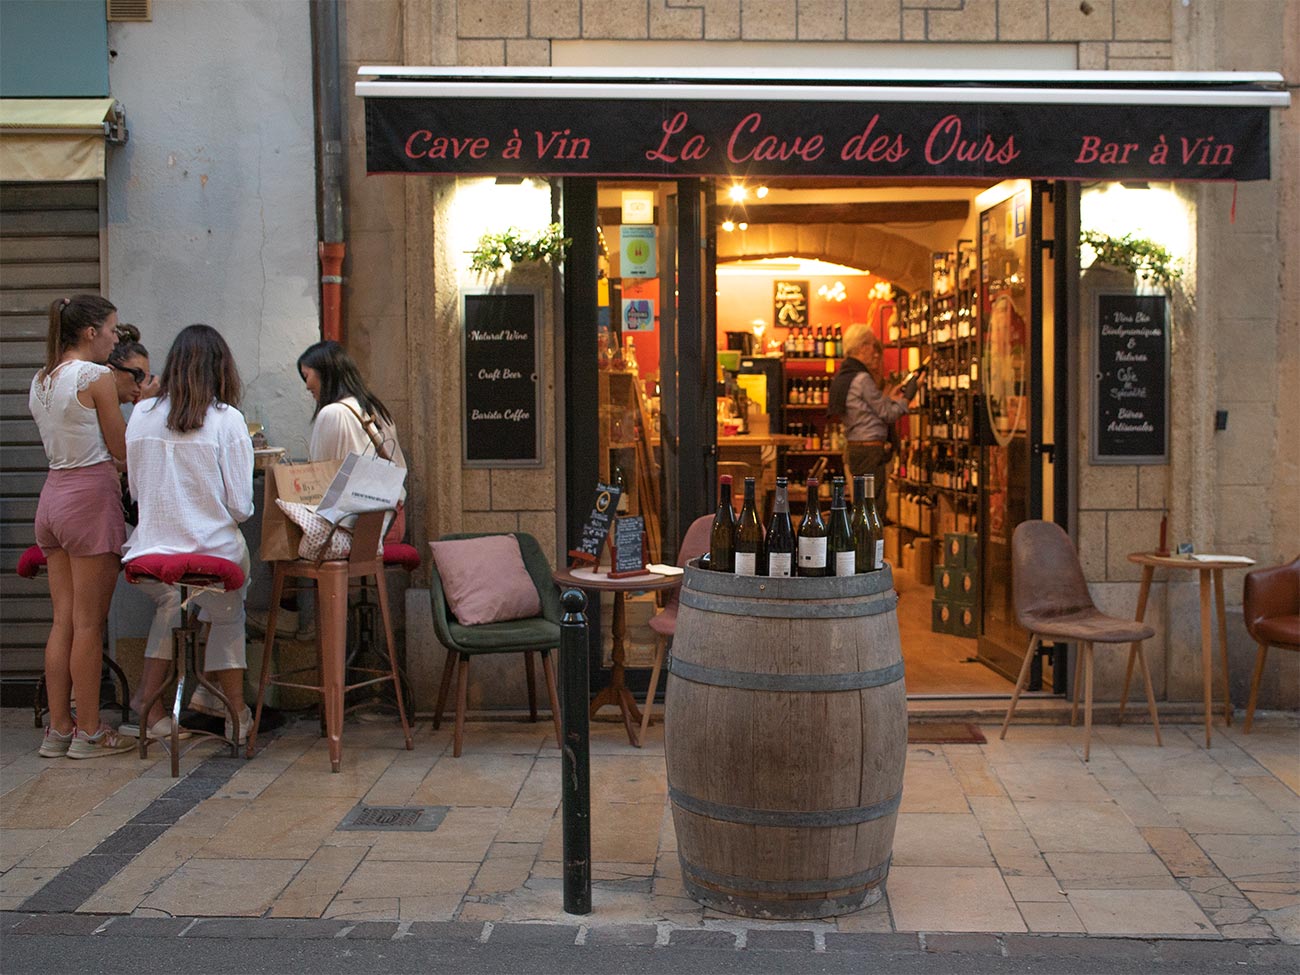 La Cave des Ours : Cave à vins à Aix-en-Provence (façade))